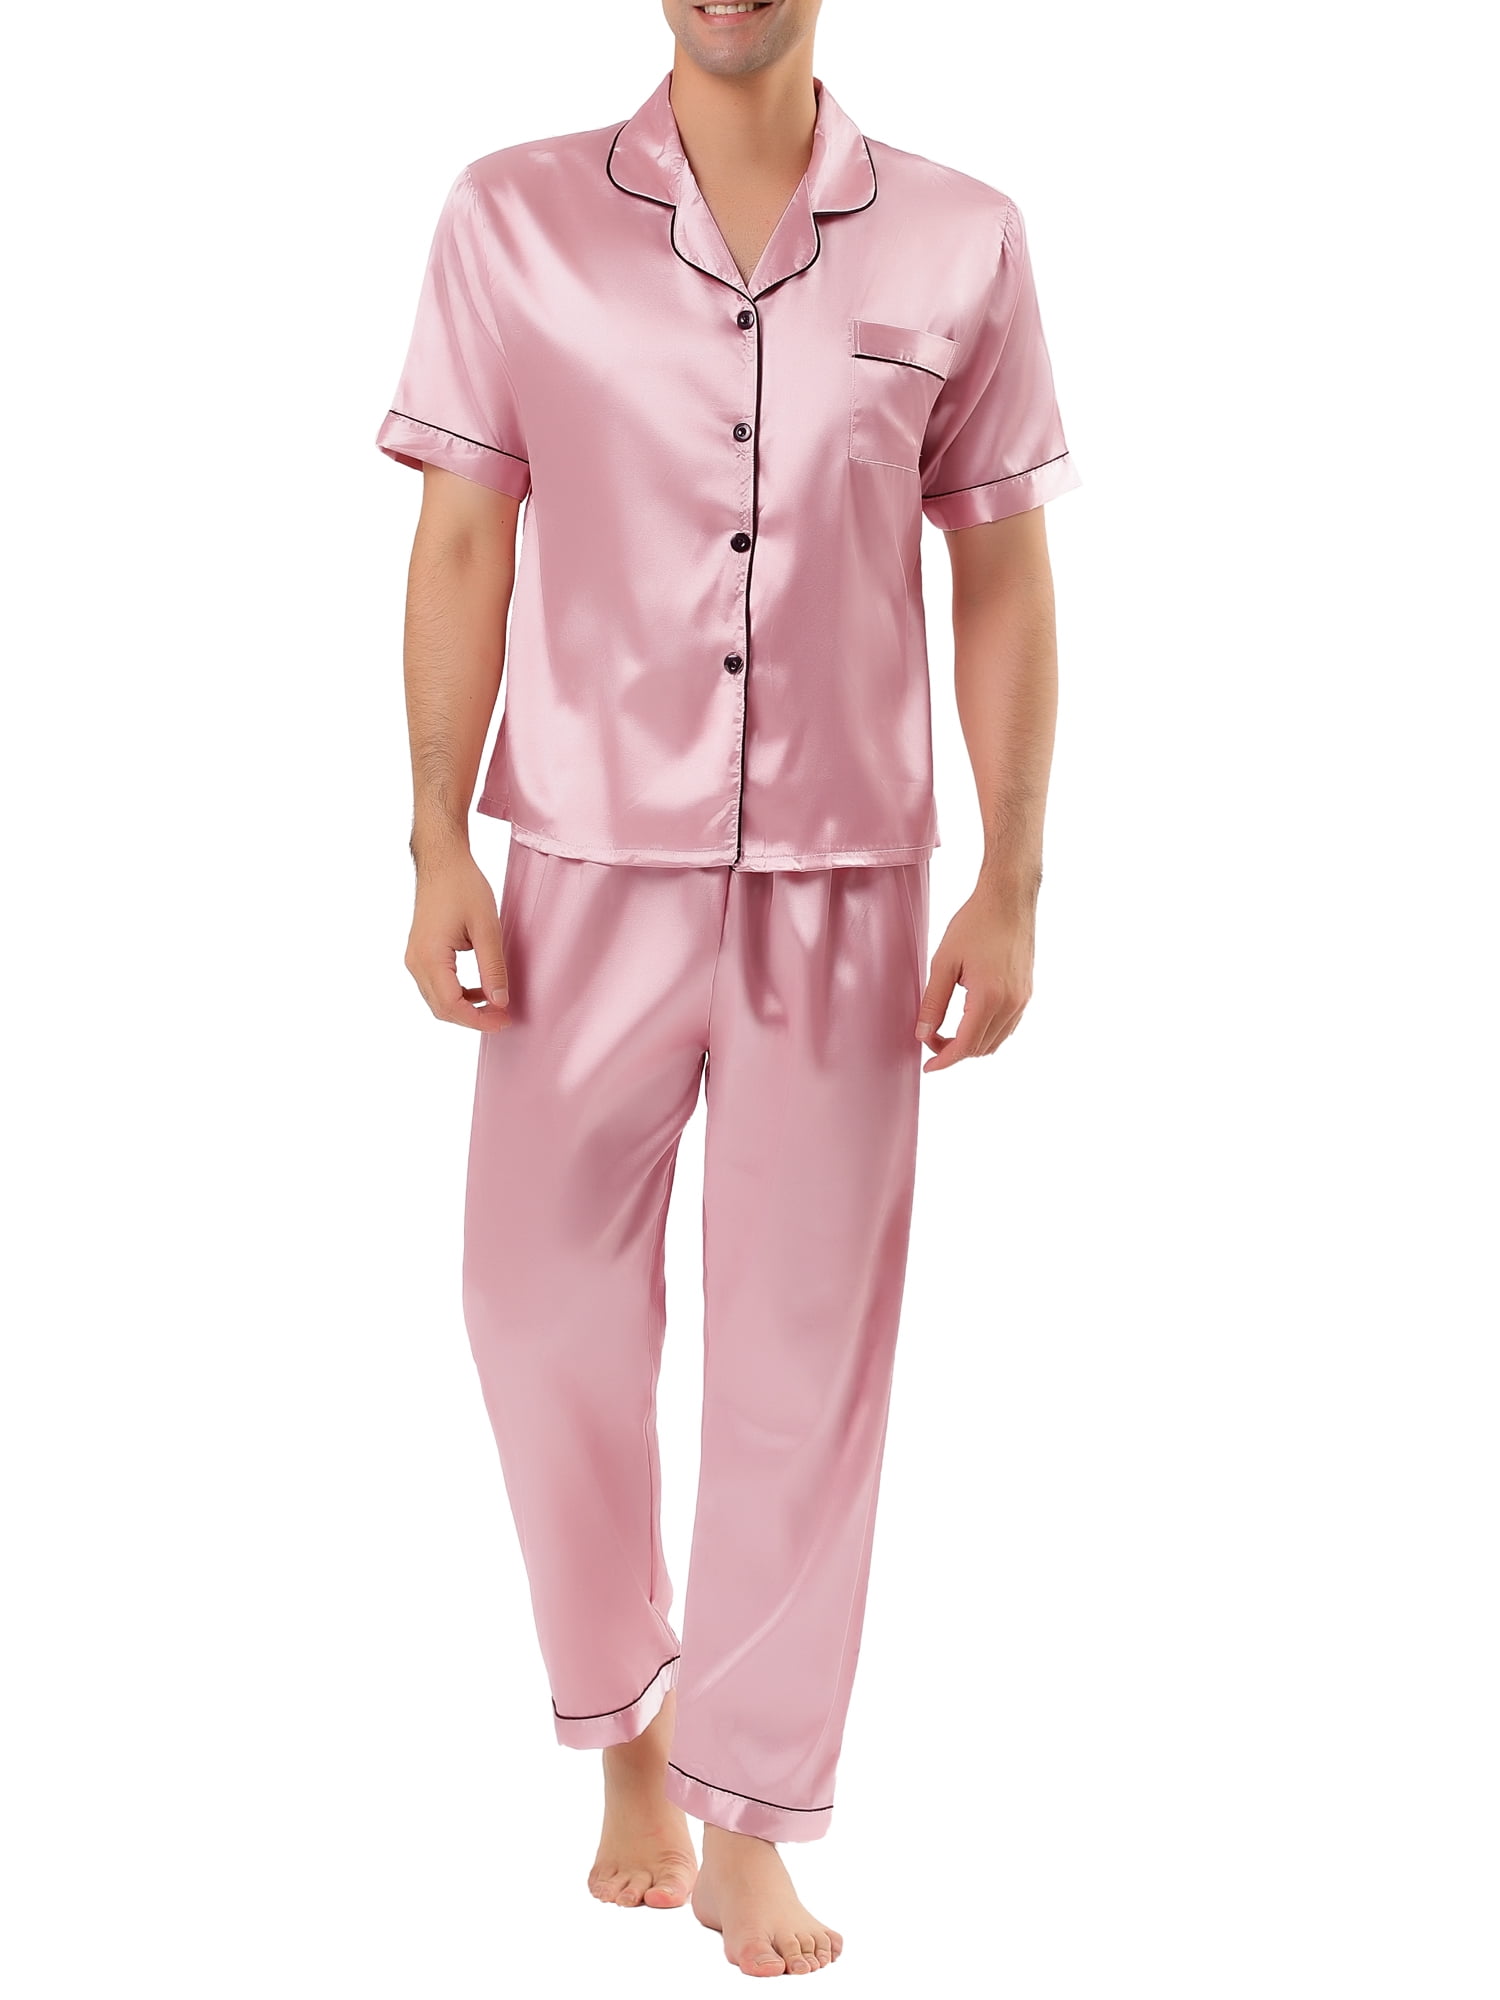 Lavenderi Mens Long Sleeve Silk Satin Pajama Set Medium,Champagne Silky Pajamas Sleepwear